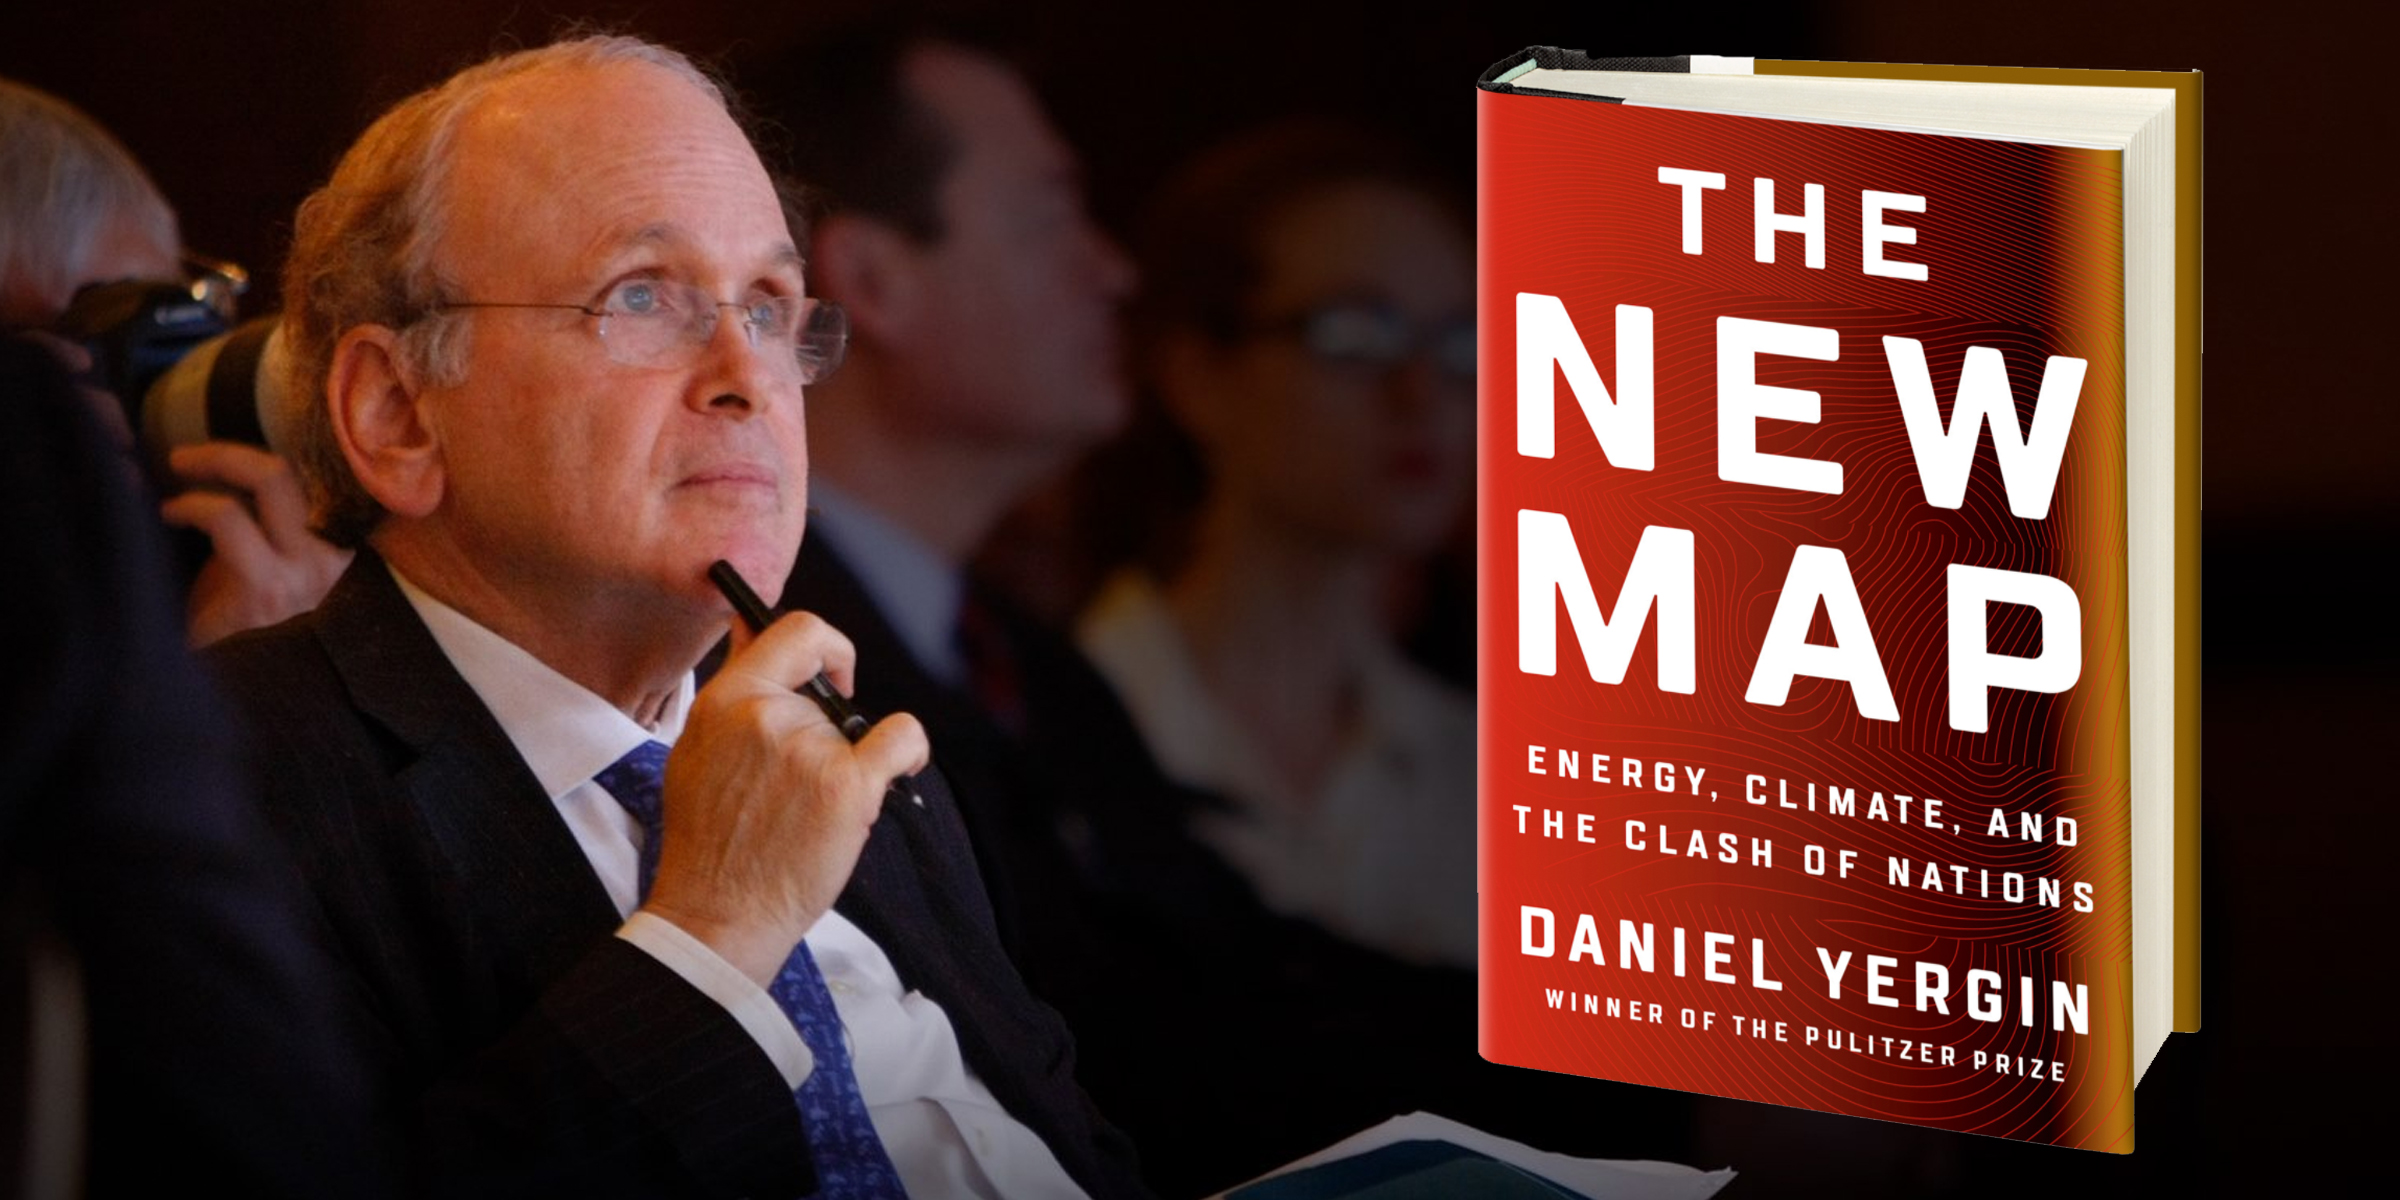 Daniel Yergin: The Master Storyteller on How the Energy World Works